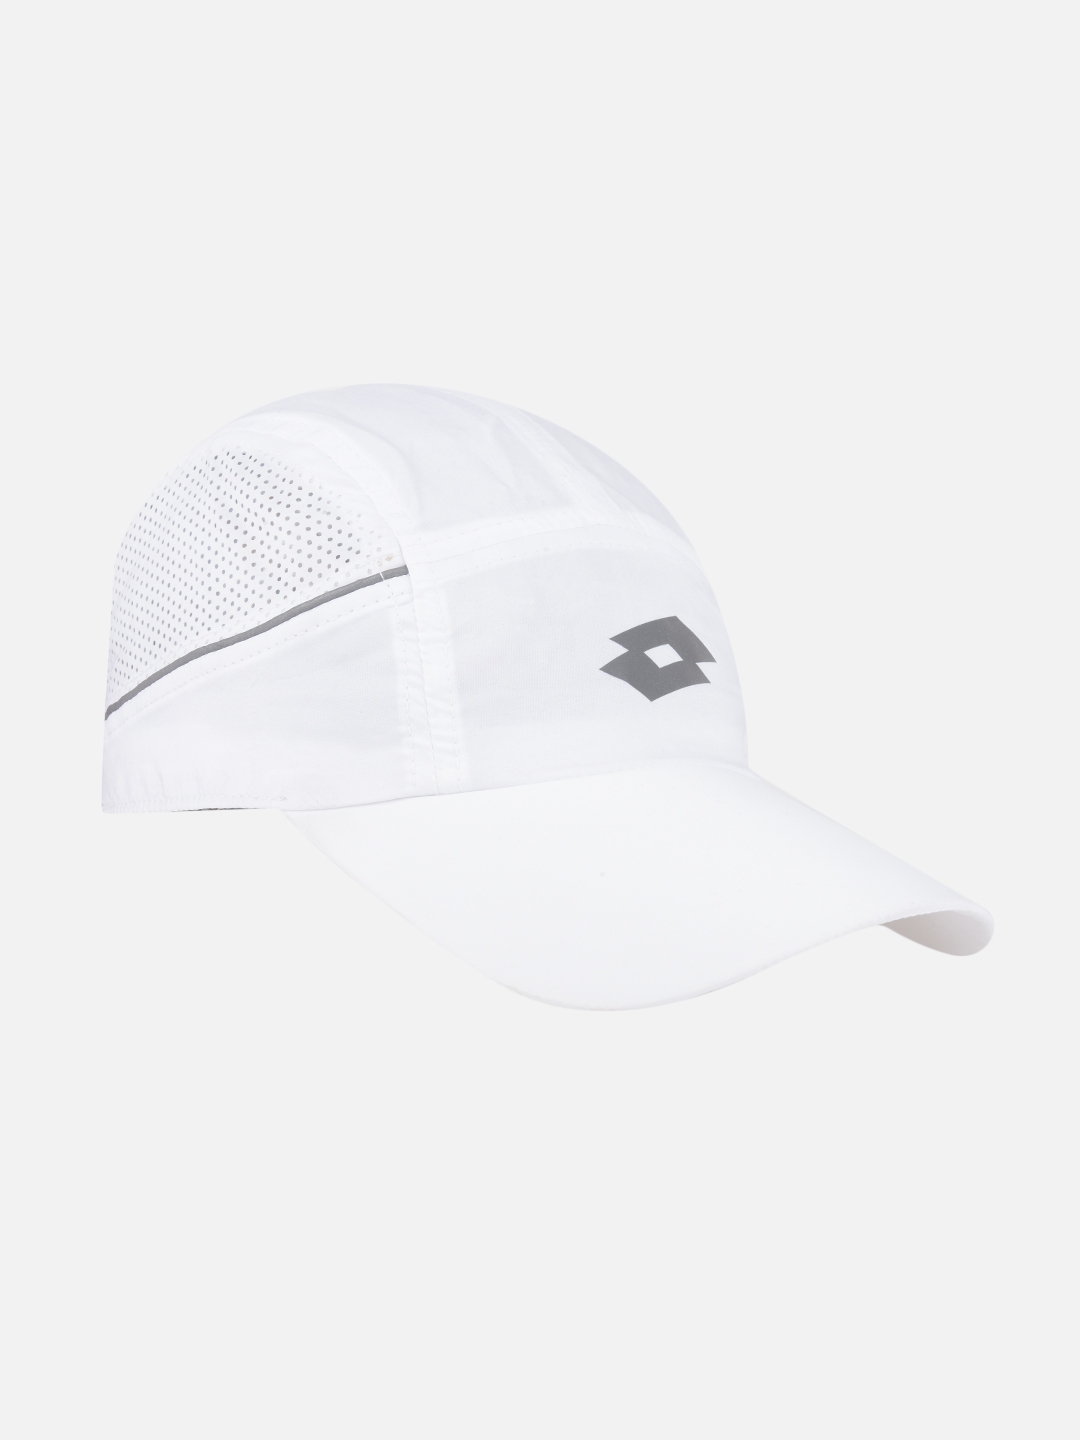 Unisex White Caps